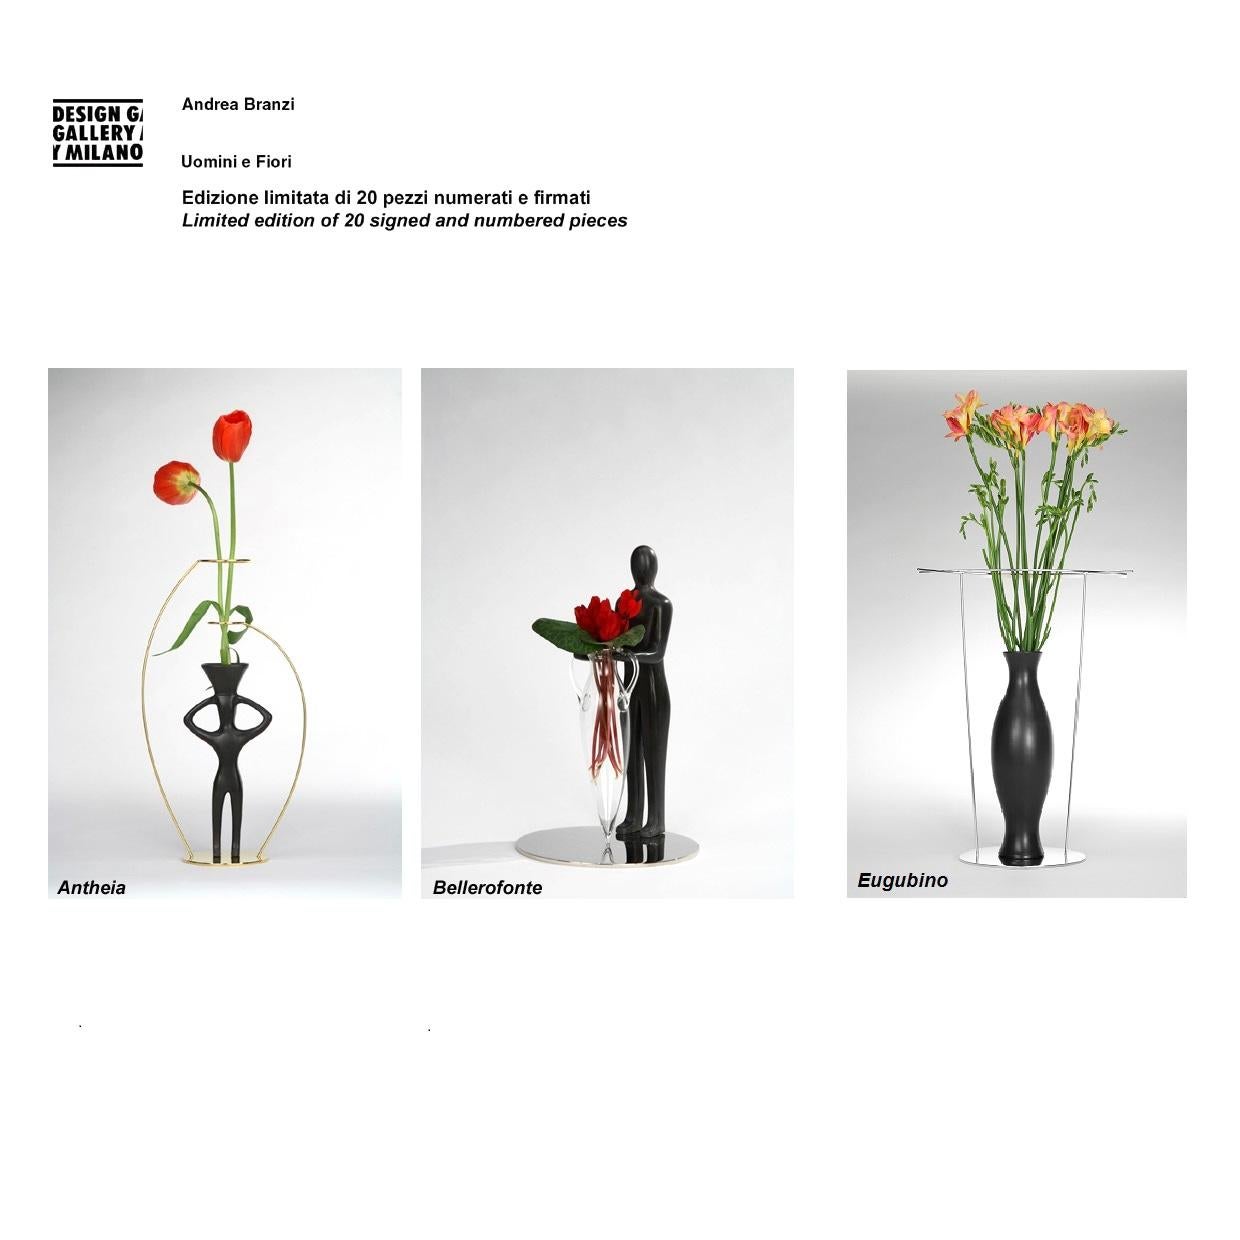 Andrea BRANZI (né en 1938)
Vase Bellerofonte, 2006
Edition Design Gallery Milano de 20 exemplaires, épuisée
Vase de la collection Uomini e Fiori, personnage en « buccherro » (fine terre cuite vernisée noire à la façon des étrusques), sur une base en